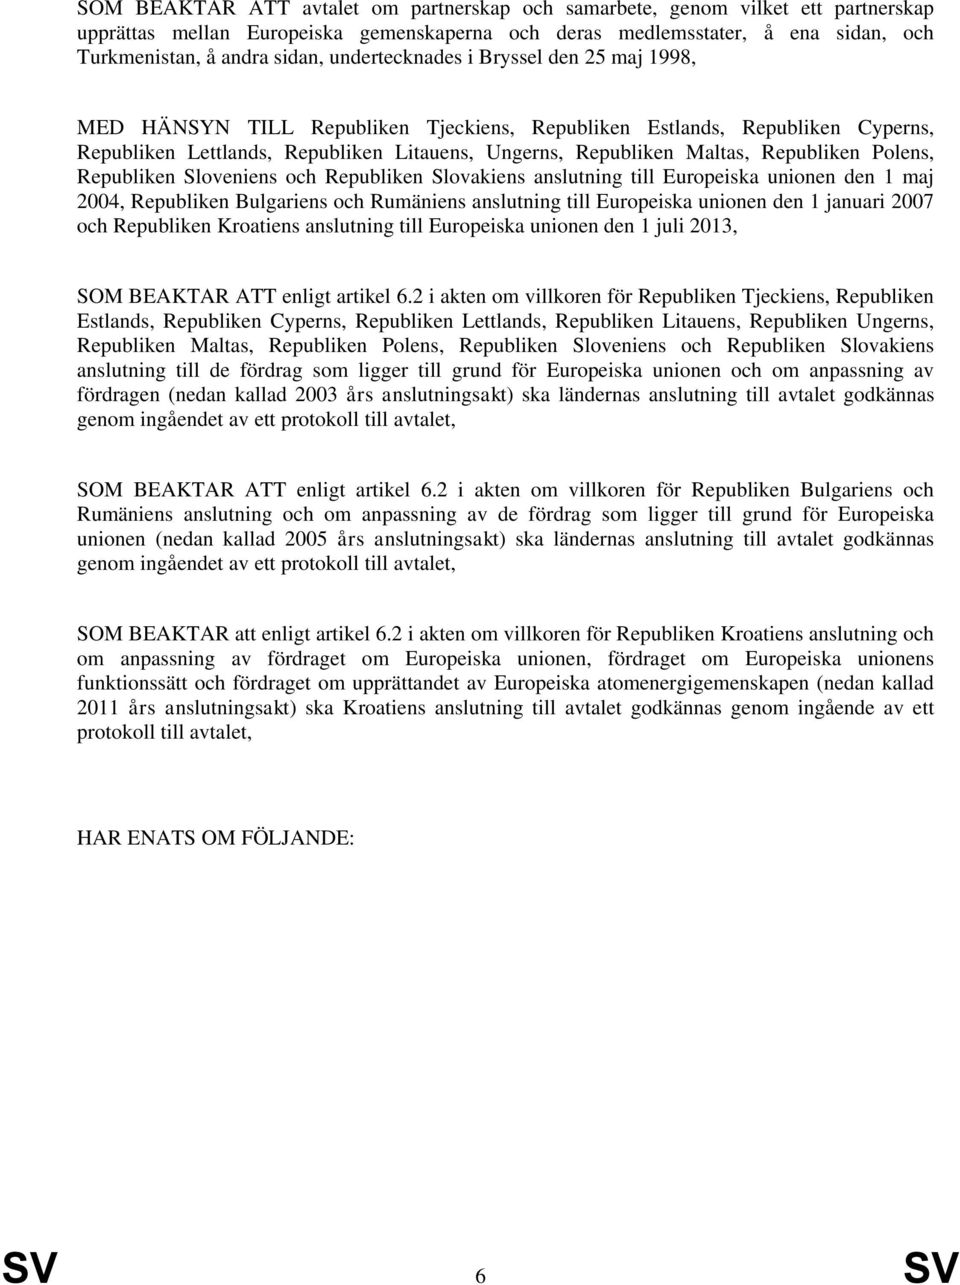 Republiken Polens, Republiken Sloveniens och Republiken Slovakiens anslutning till Europeiska unionen den 1 maj 2004, Republiken Bulgariens och Rumäniens anslutning till Europeiska unionen den 1